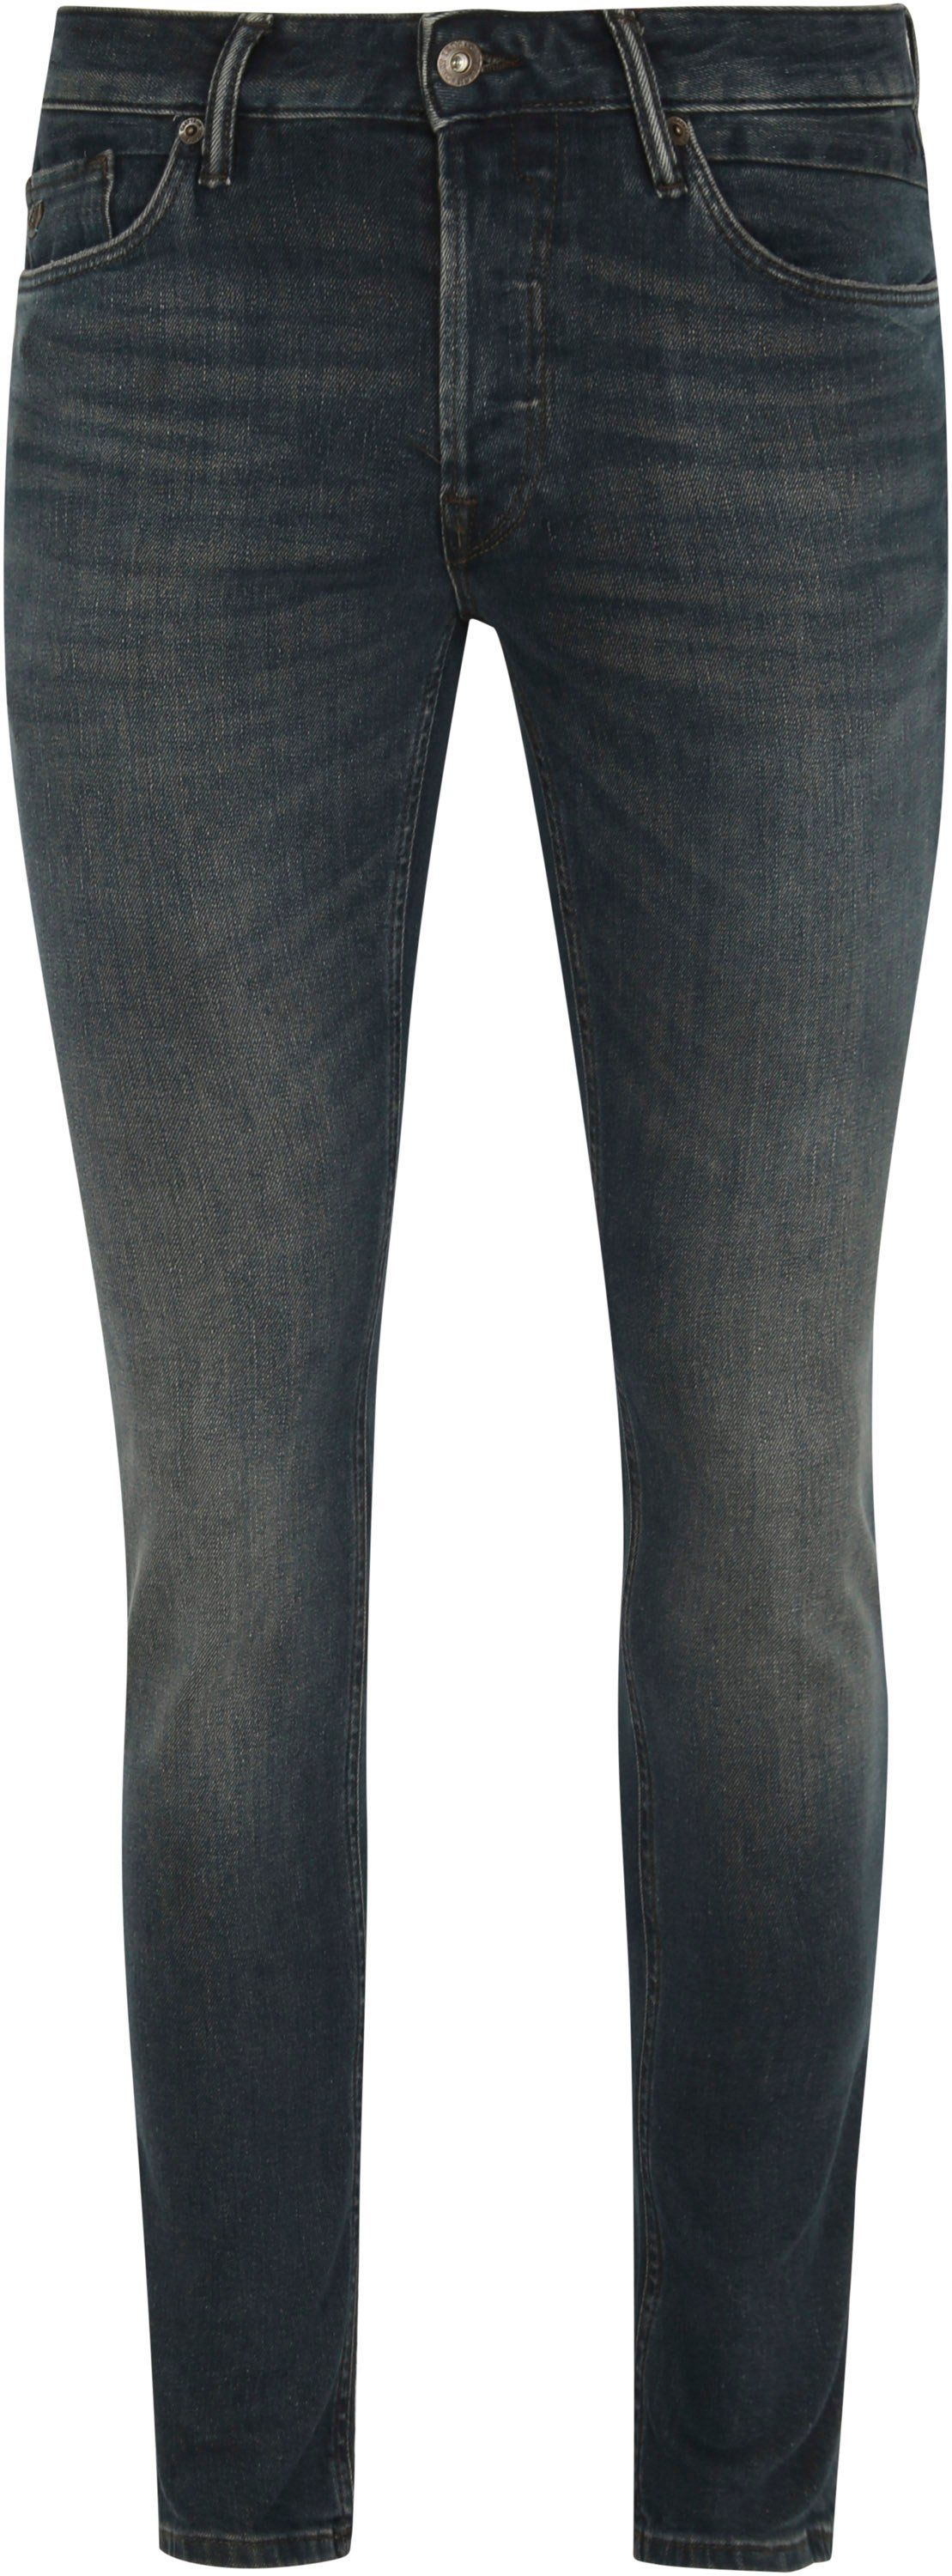 Cast Iron Riser Jeans ADW Dark Blue Dark Blue size W 30